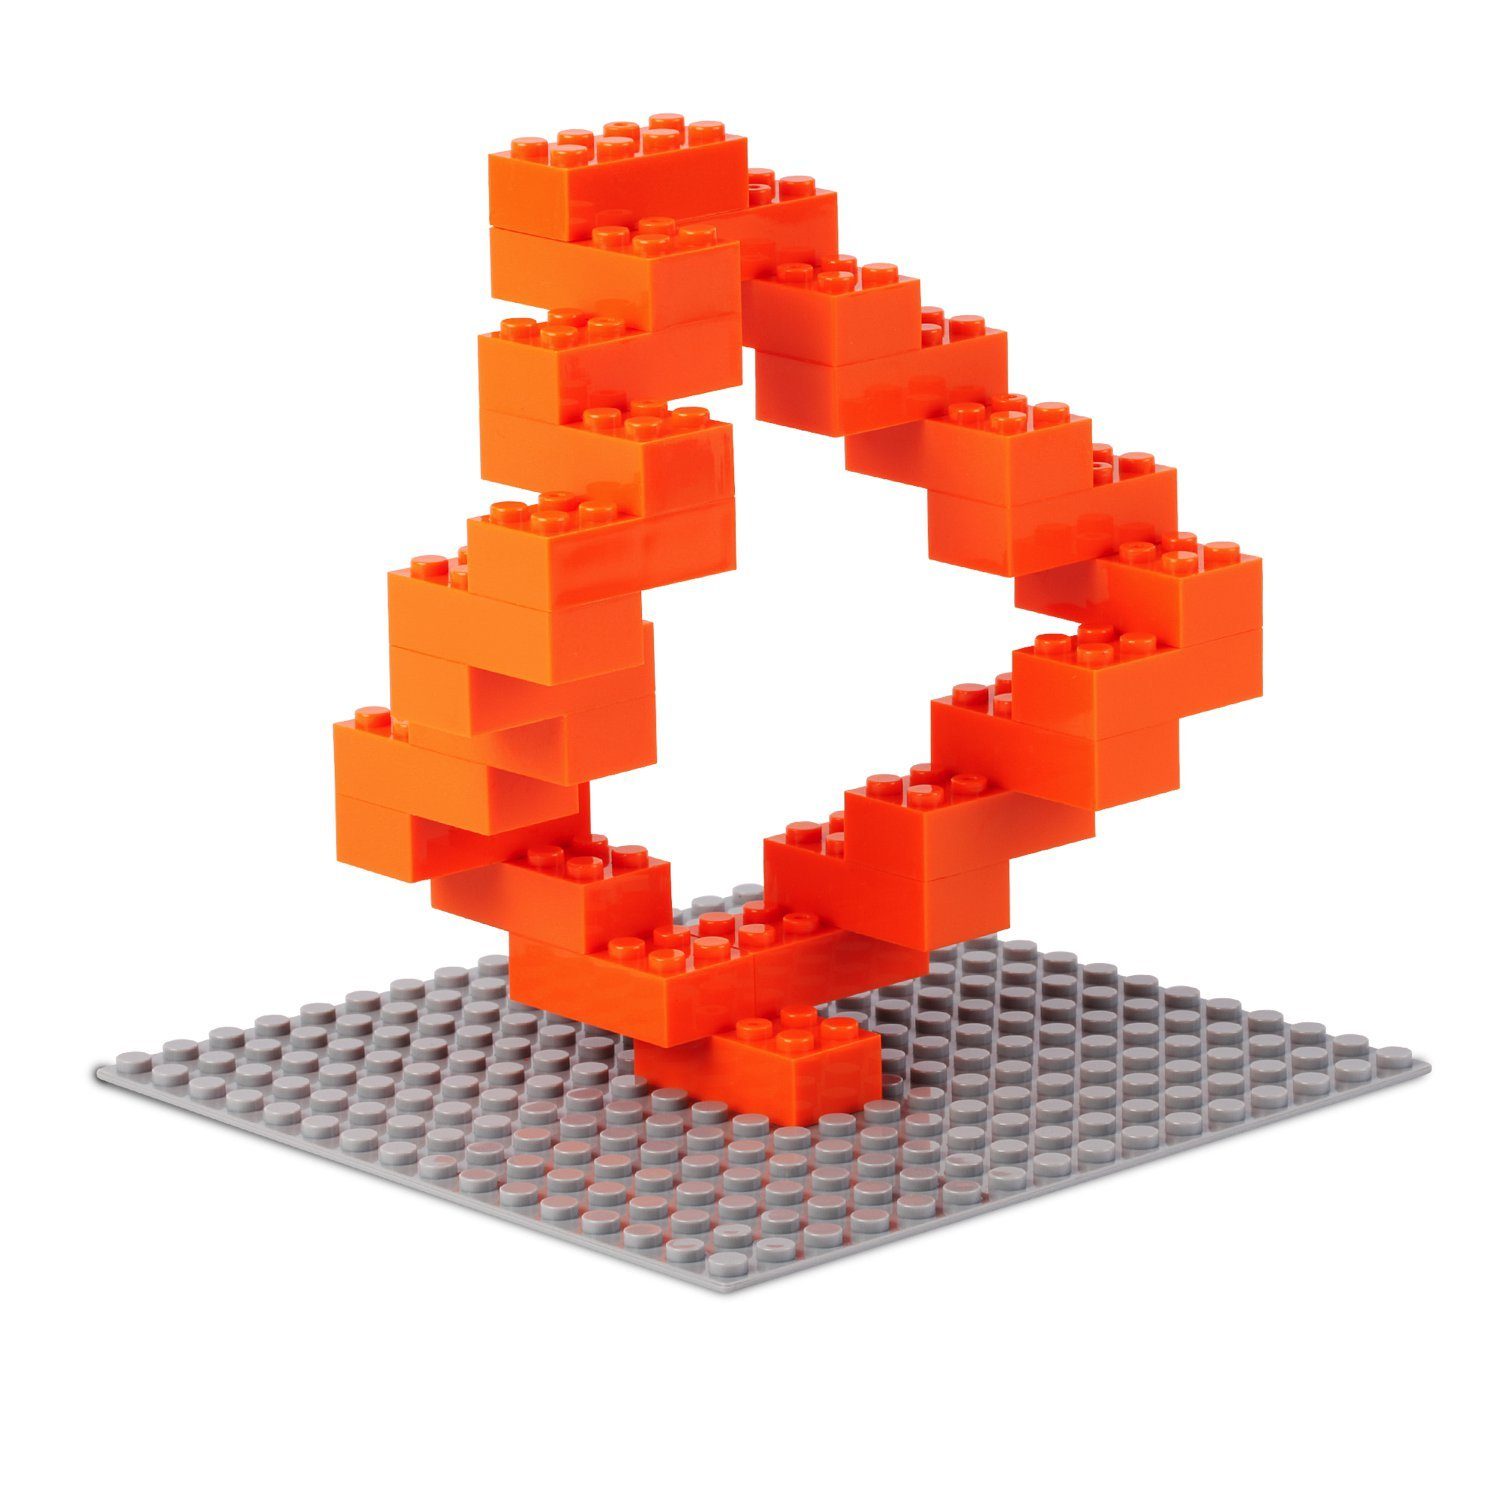 mit Box, Bausteine orange - Konstruktionsspielsteine Box-Set Anderen (3er Herstellern + Platte Farben verschiedene Steinen Katara 520 zu Kompatibel + allen Set),